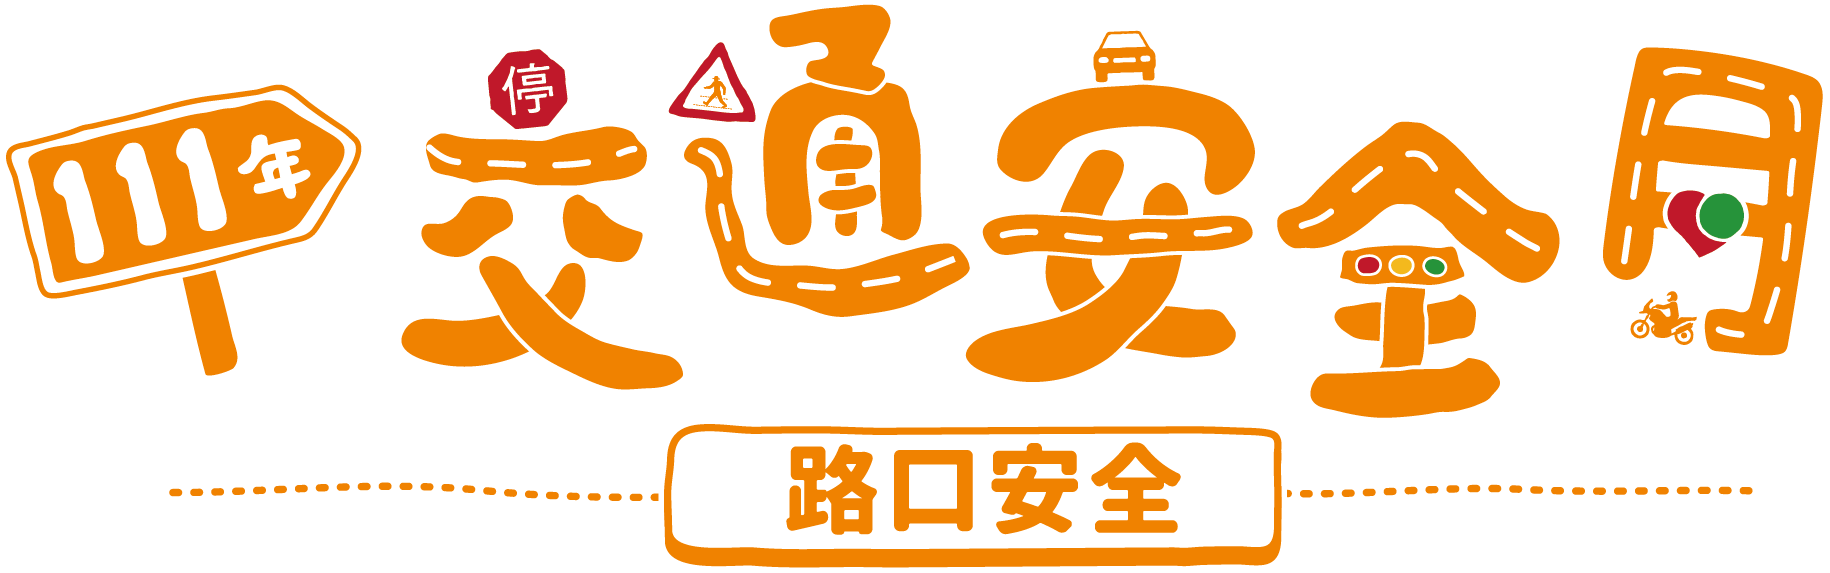 交通安全月logo